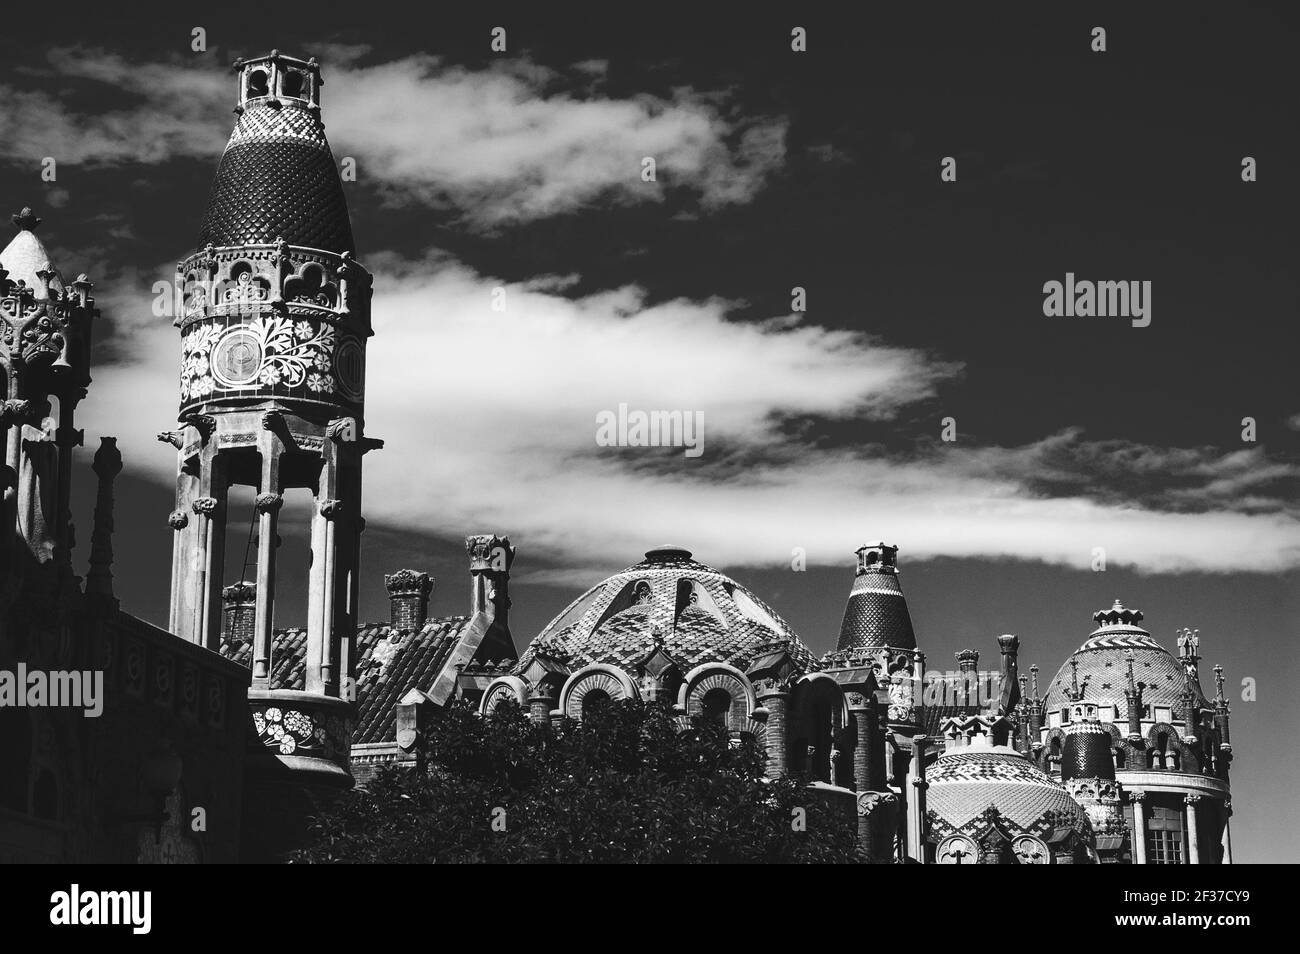 Attraction touristique à Barcelone, Catalogne, Espagne, dômes de l'hôpital de Sant Pau, célèbre monument modernisme. Photo historique noir blanc Banque D'Images